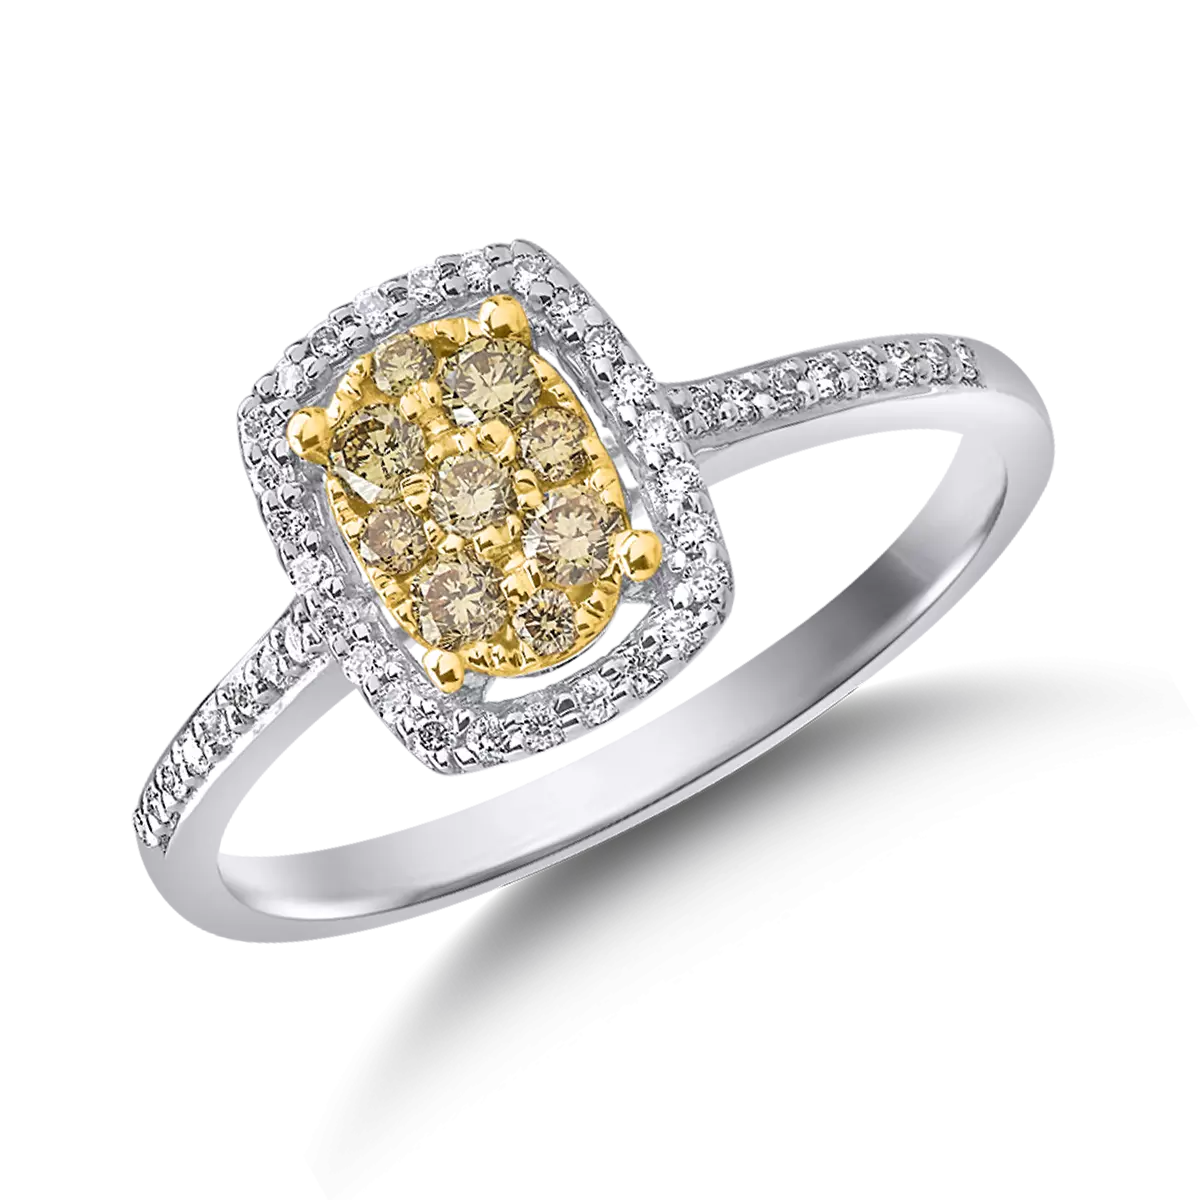 Пръстен от 18K жълто-бяло злато с 0.166ct жълти диаманти и 0.113ct диаманти